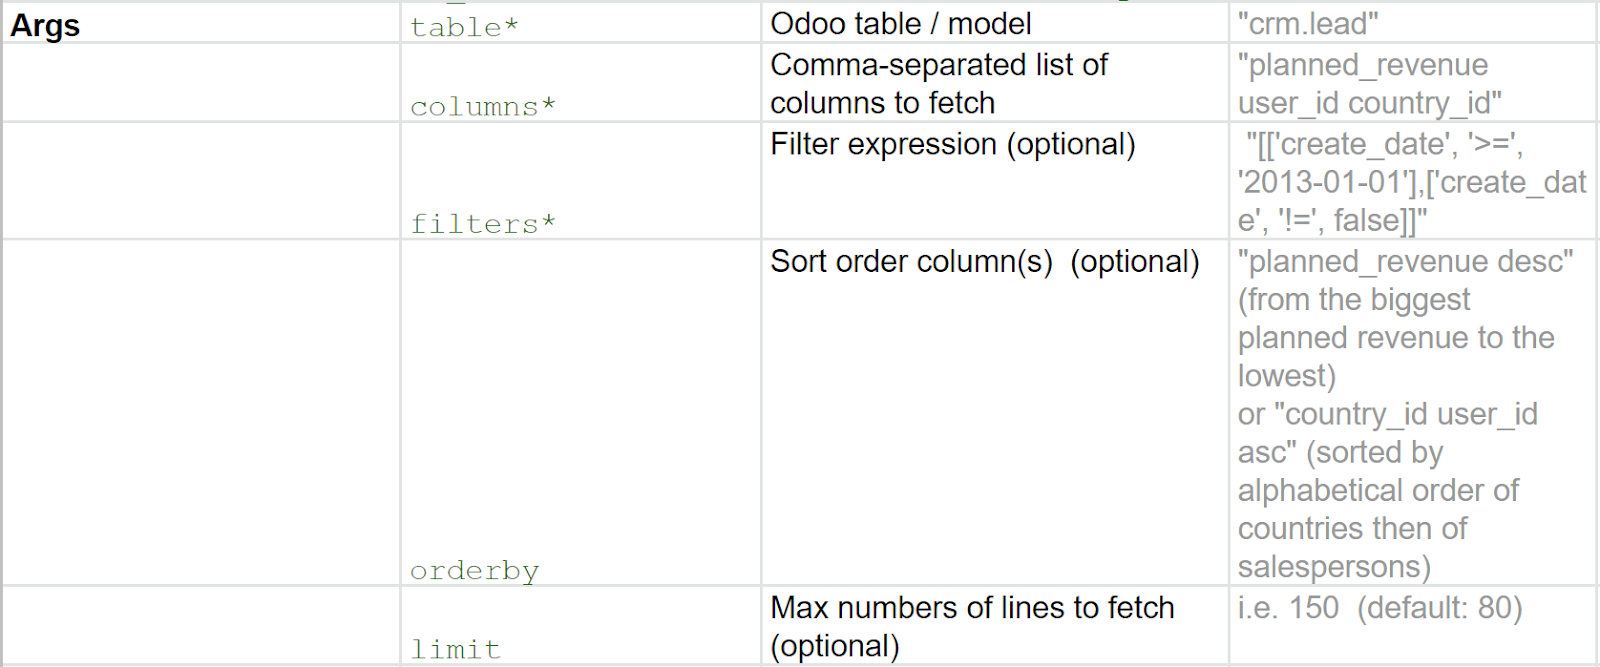 在Odoo中使用的參數示例表